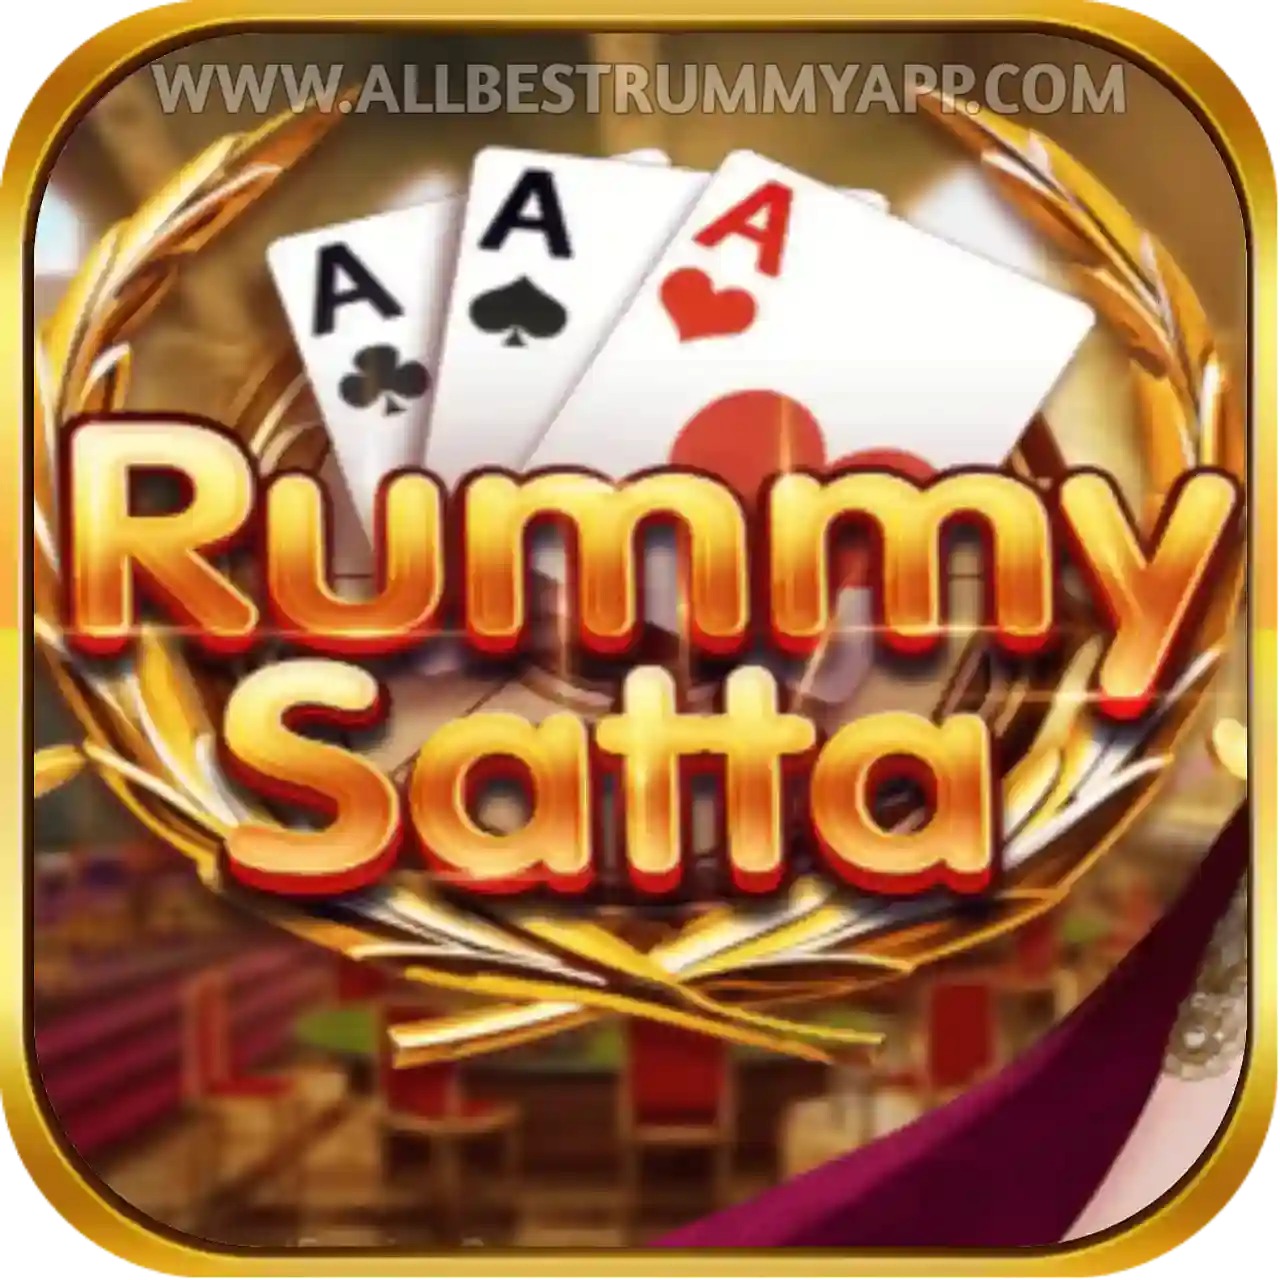 Rummy Satta Logo - All Best Rummy App